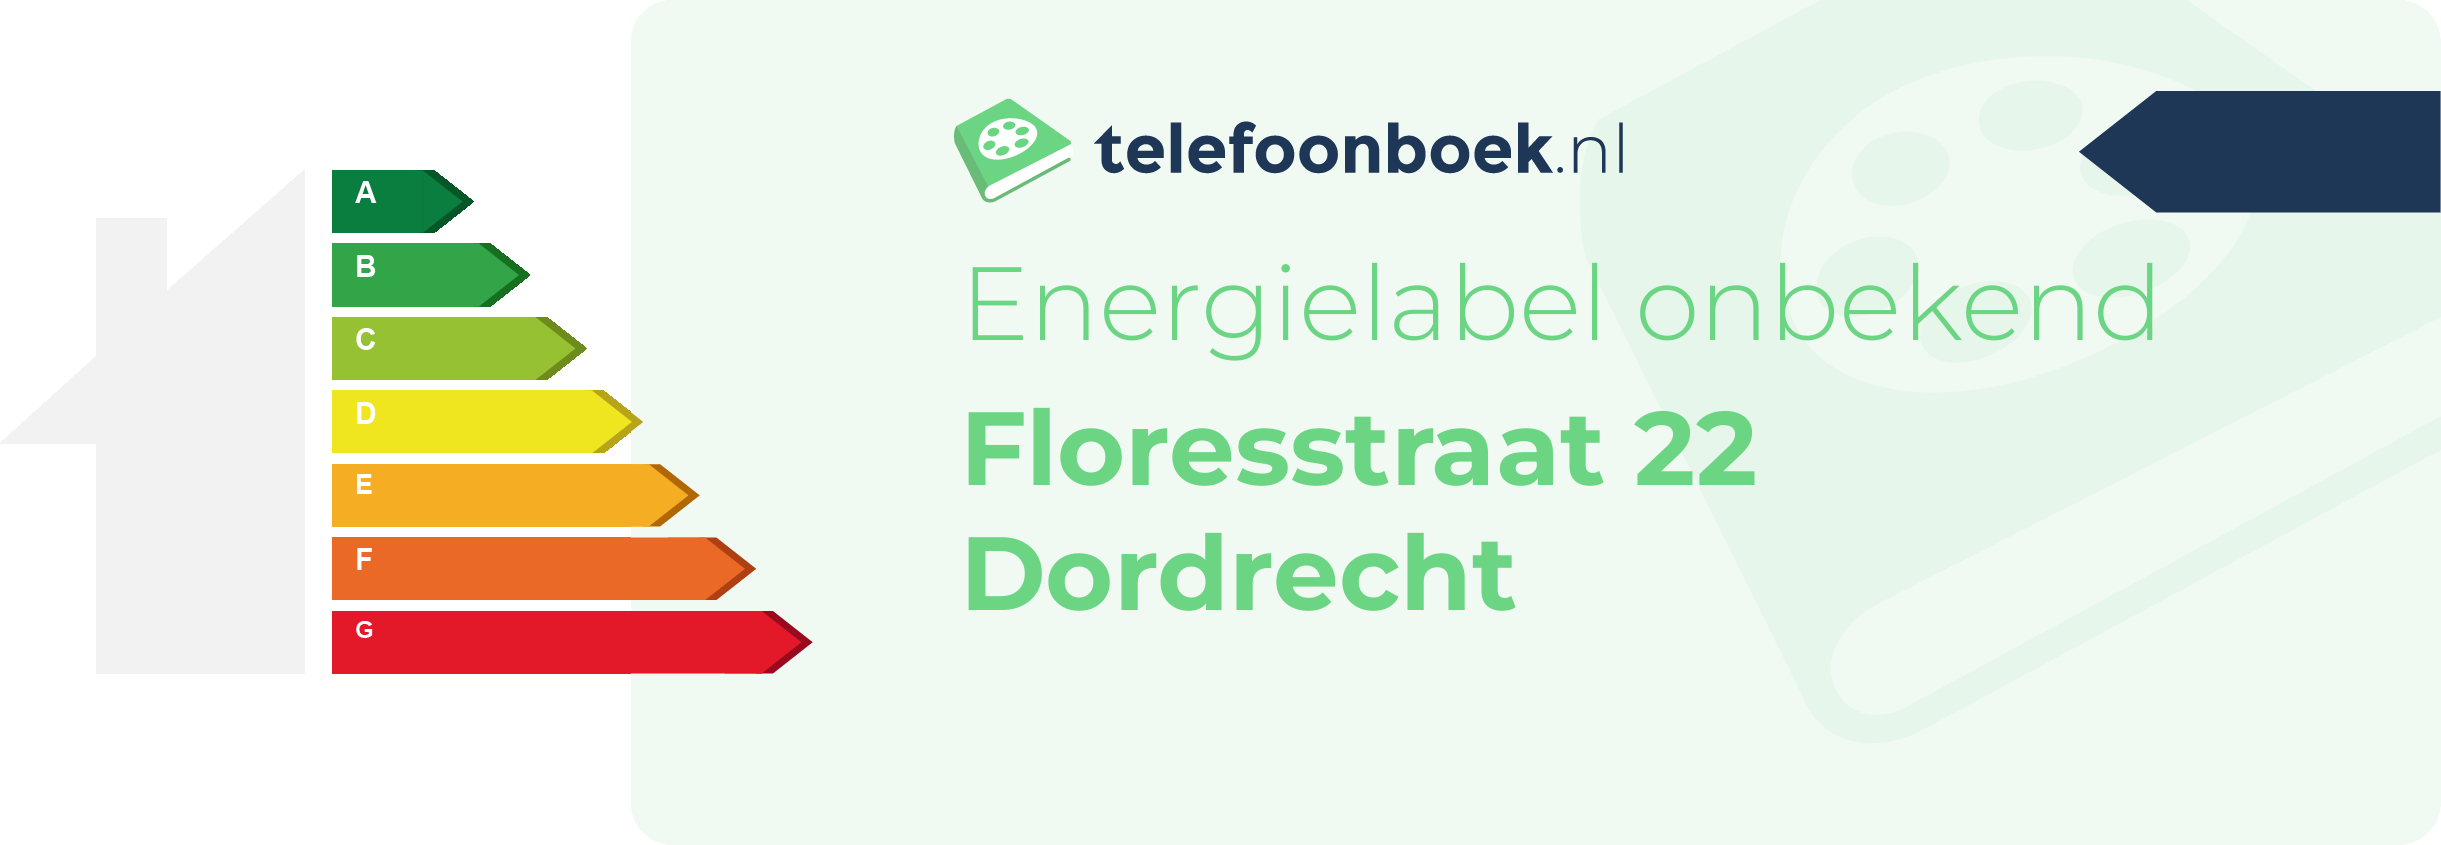 Energielabel Floresstraat 22 Dordrecht